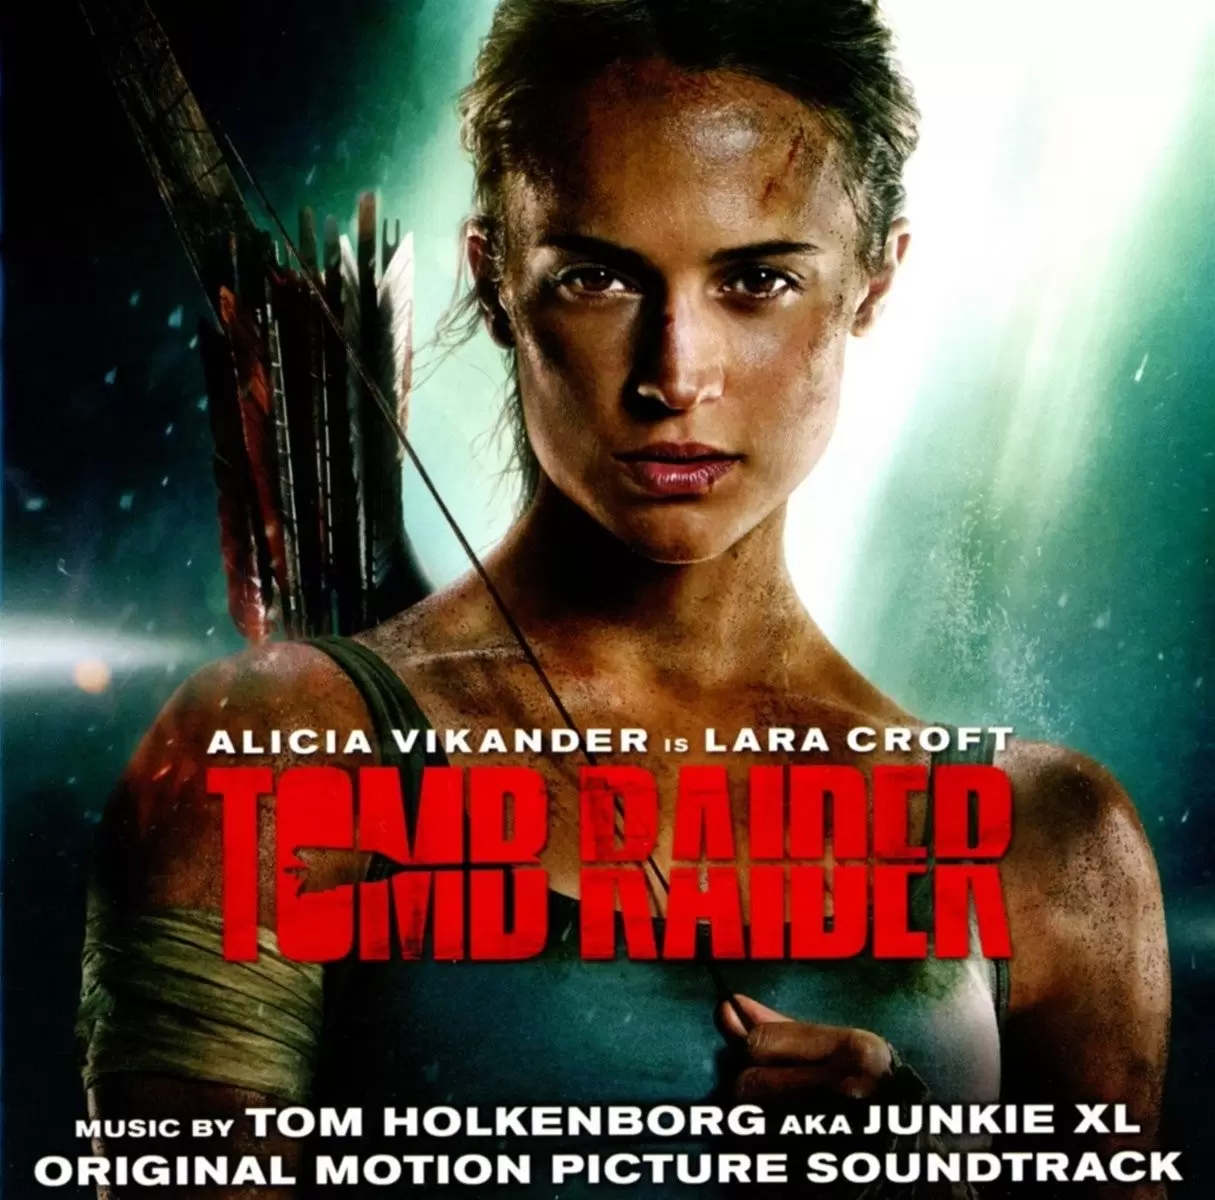 Bande originale de films, jeux vidéos et séries TV - Tomb Raider